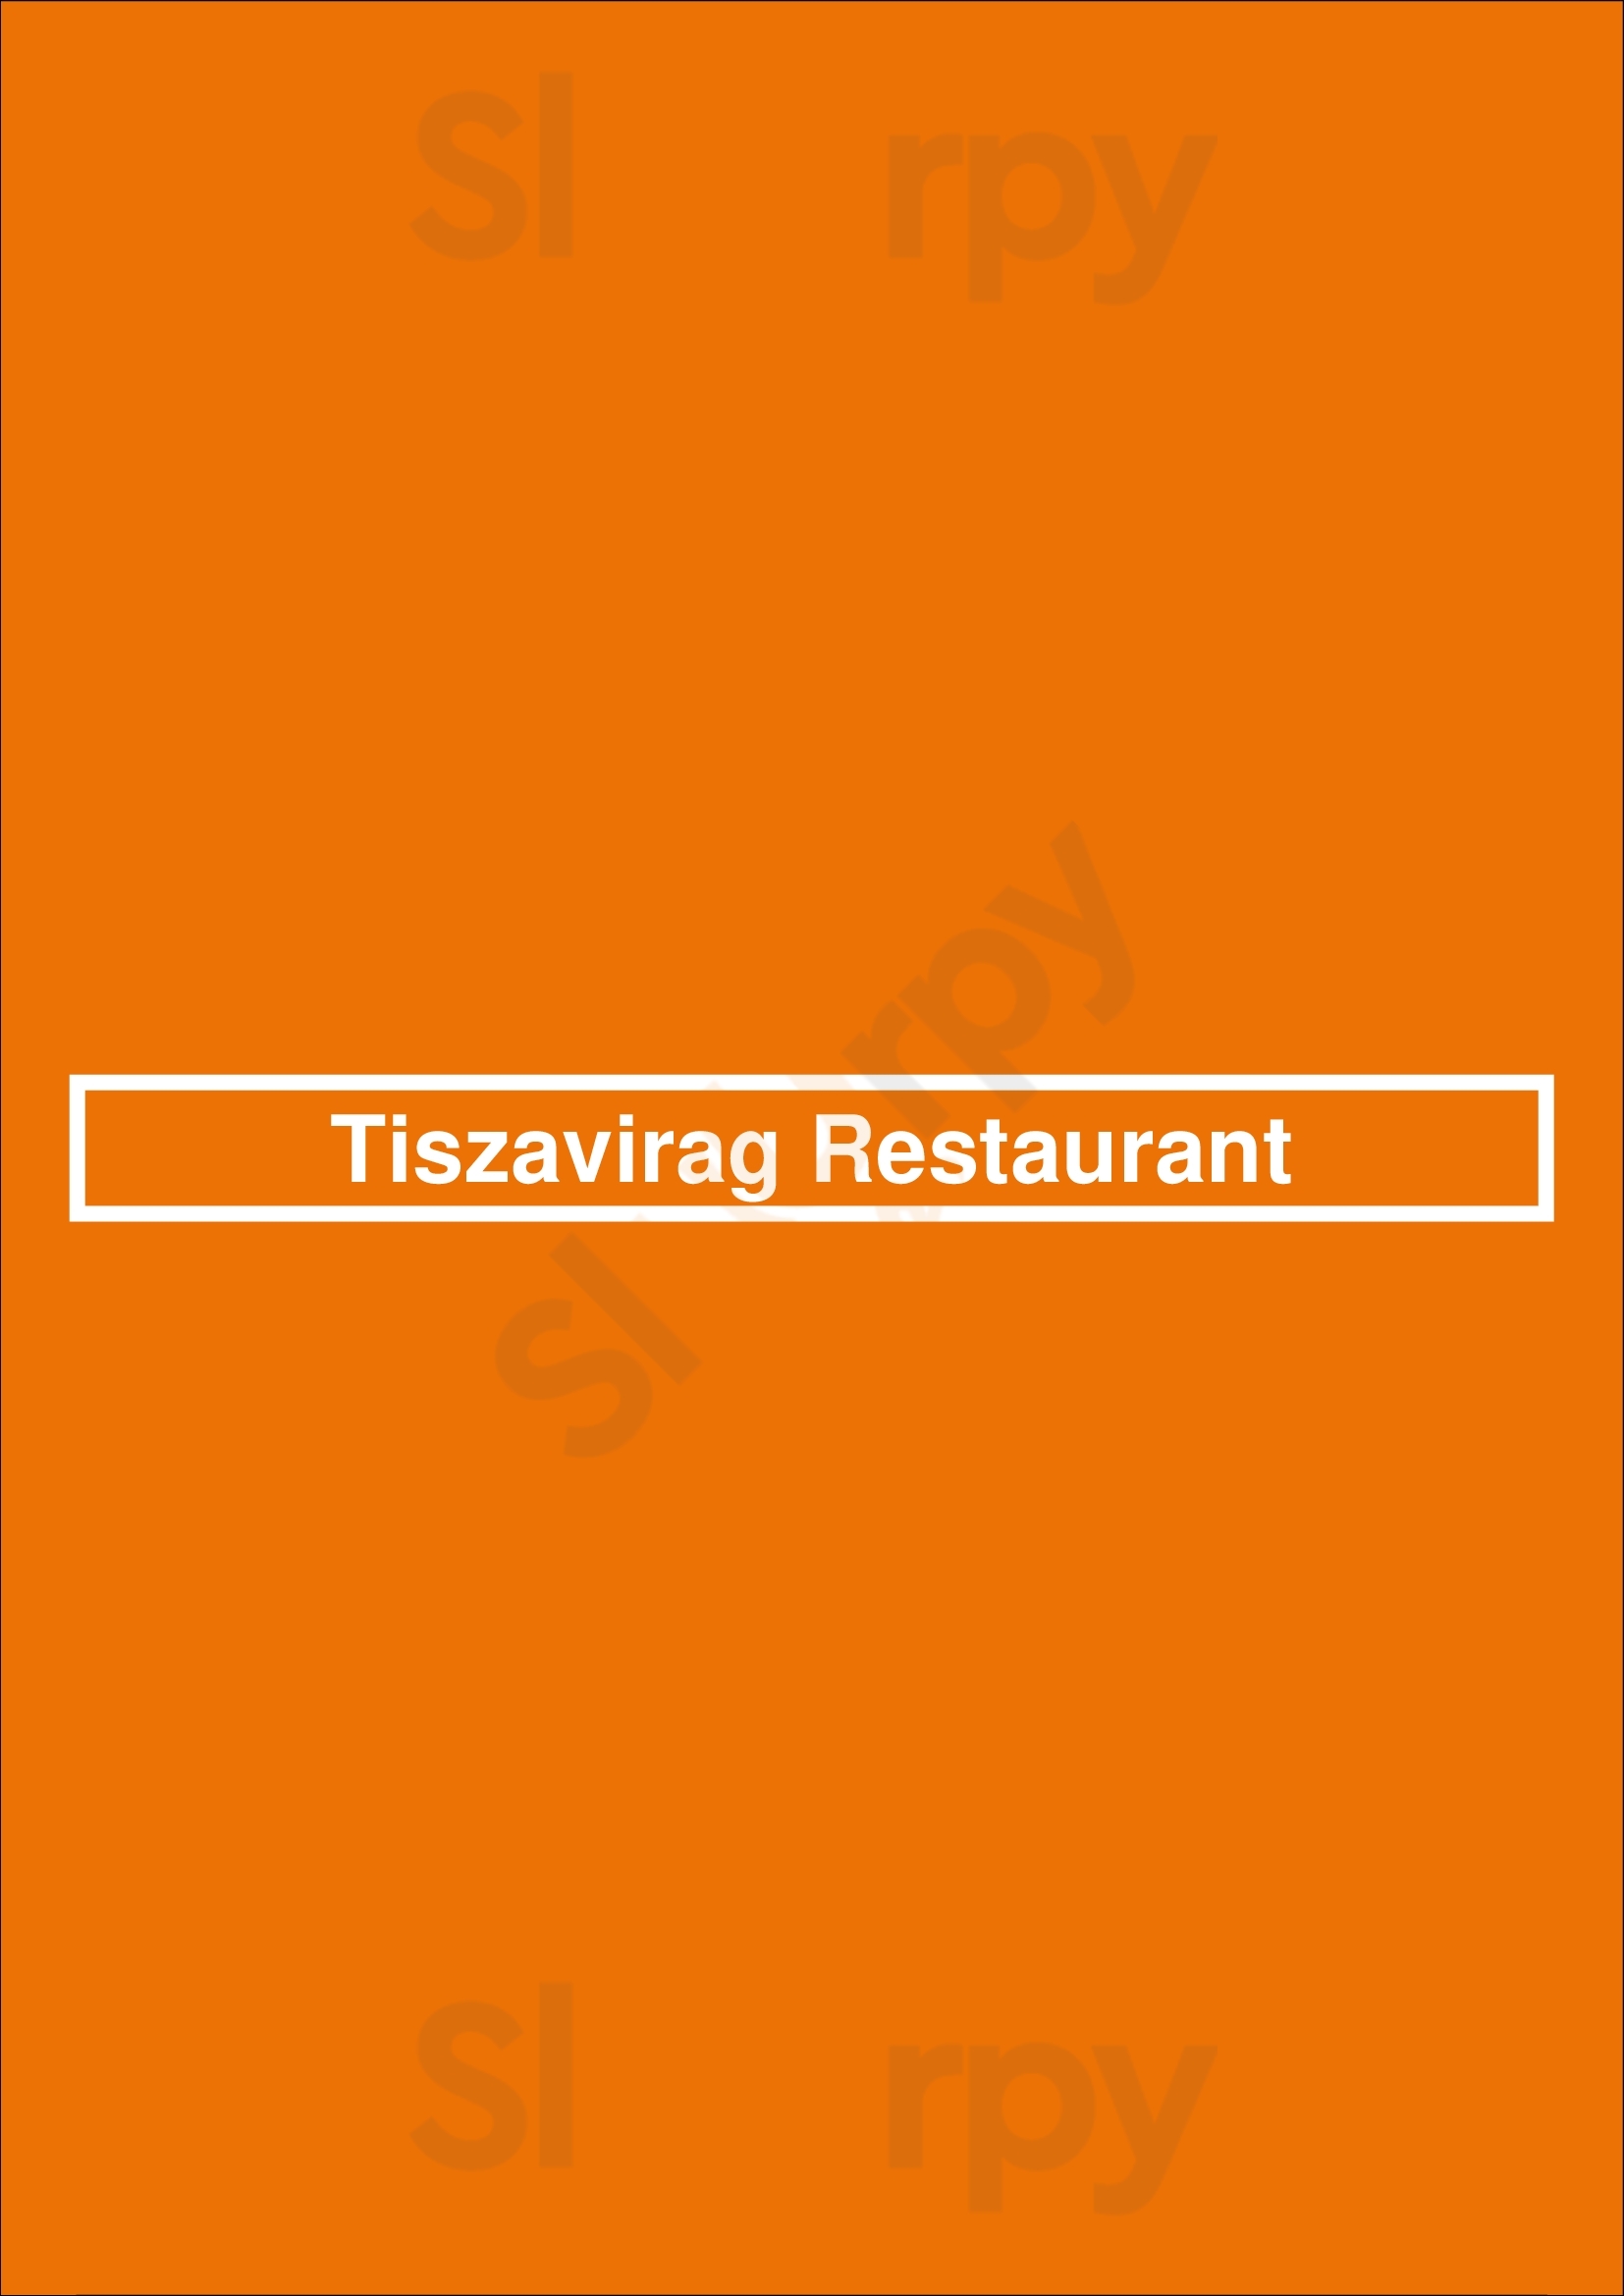 Tiszavirag Restaurant Szeged Menu - 1